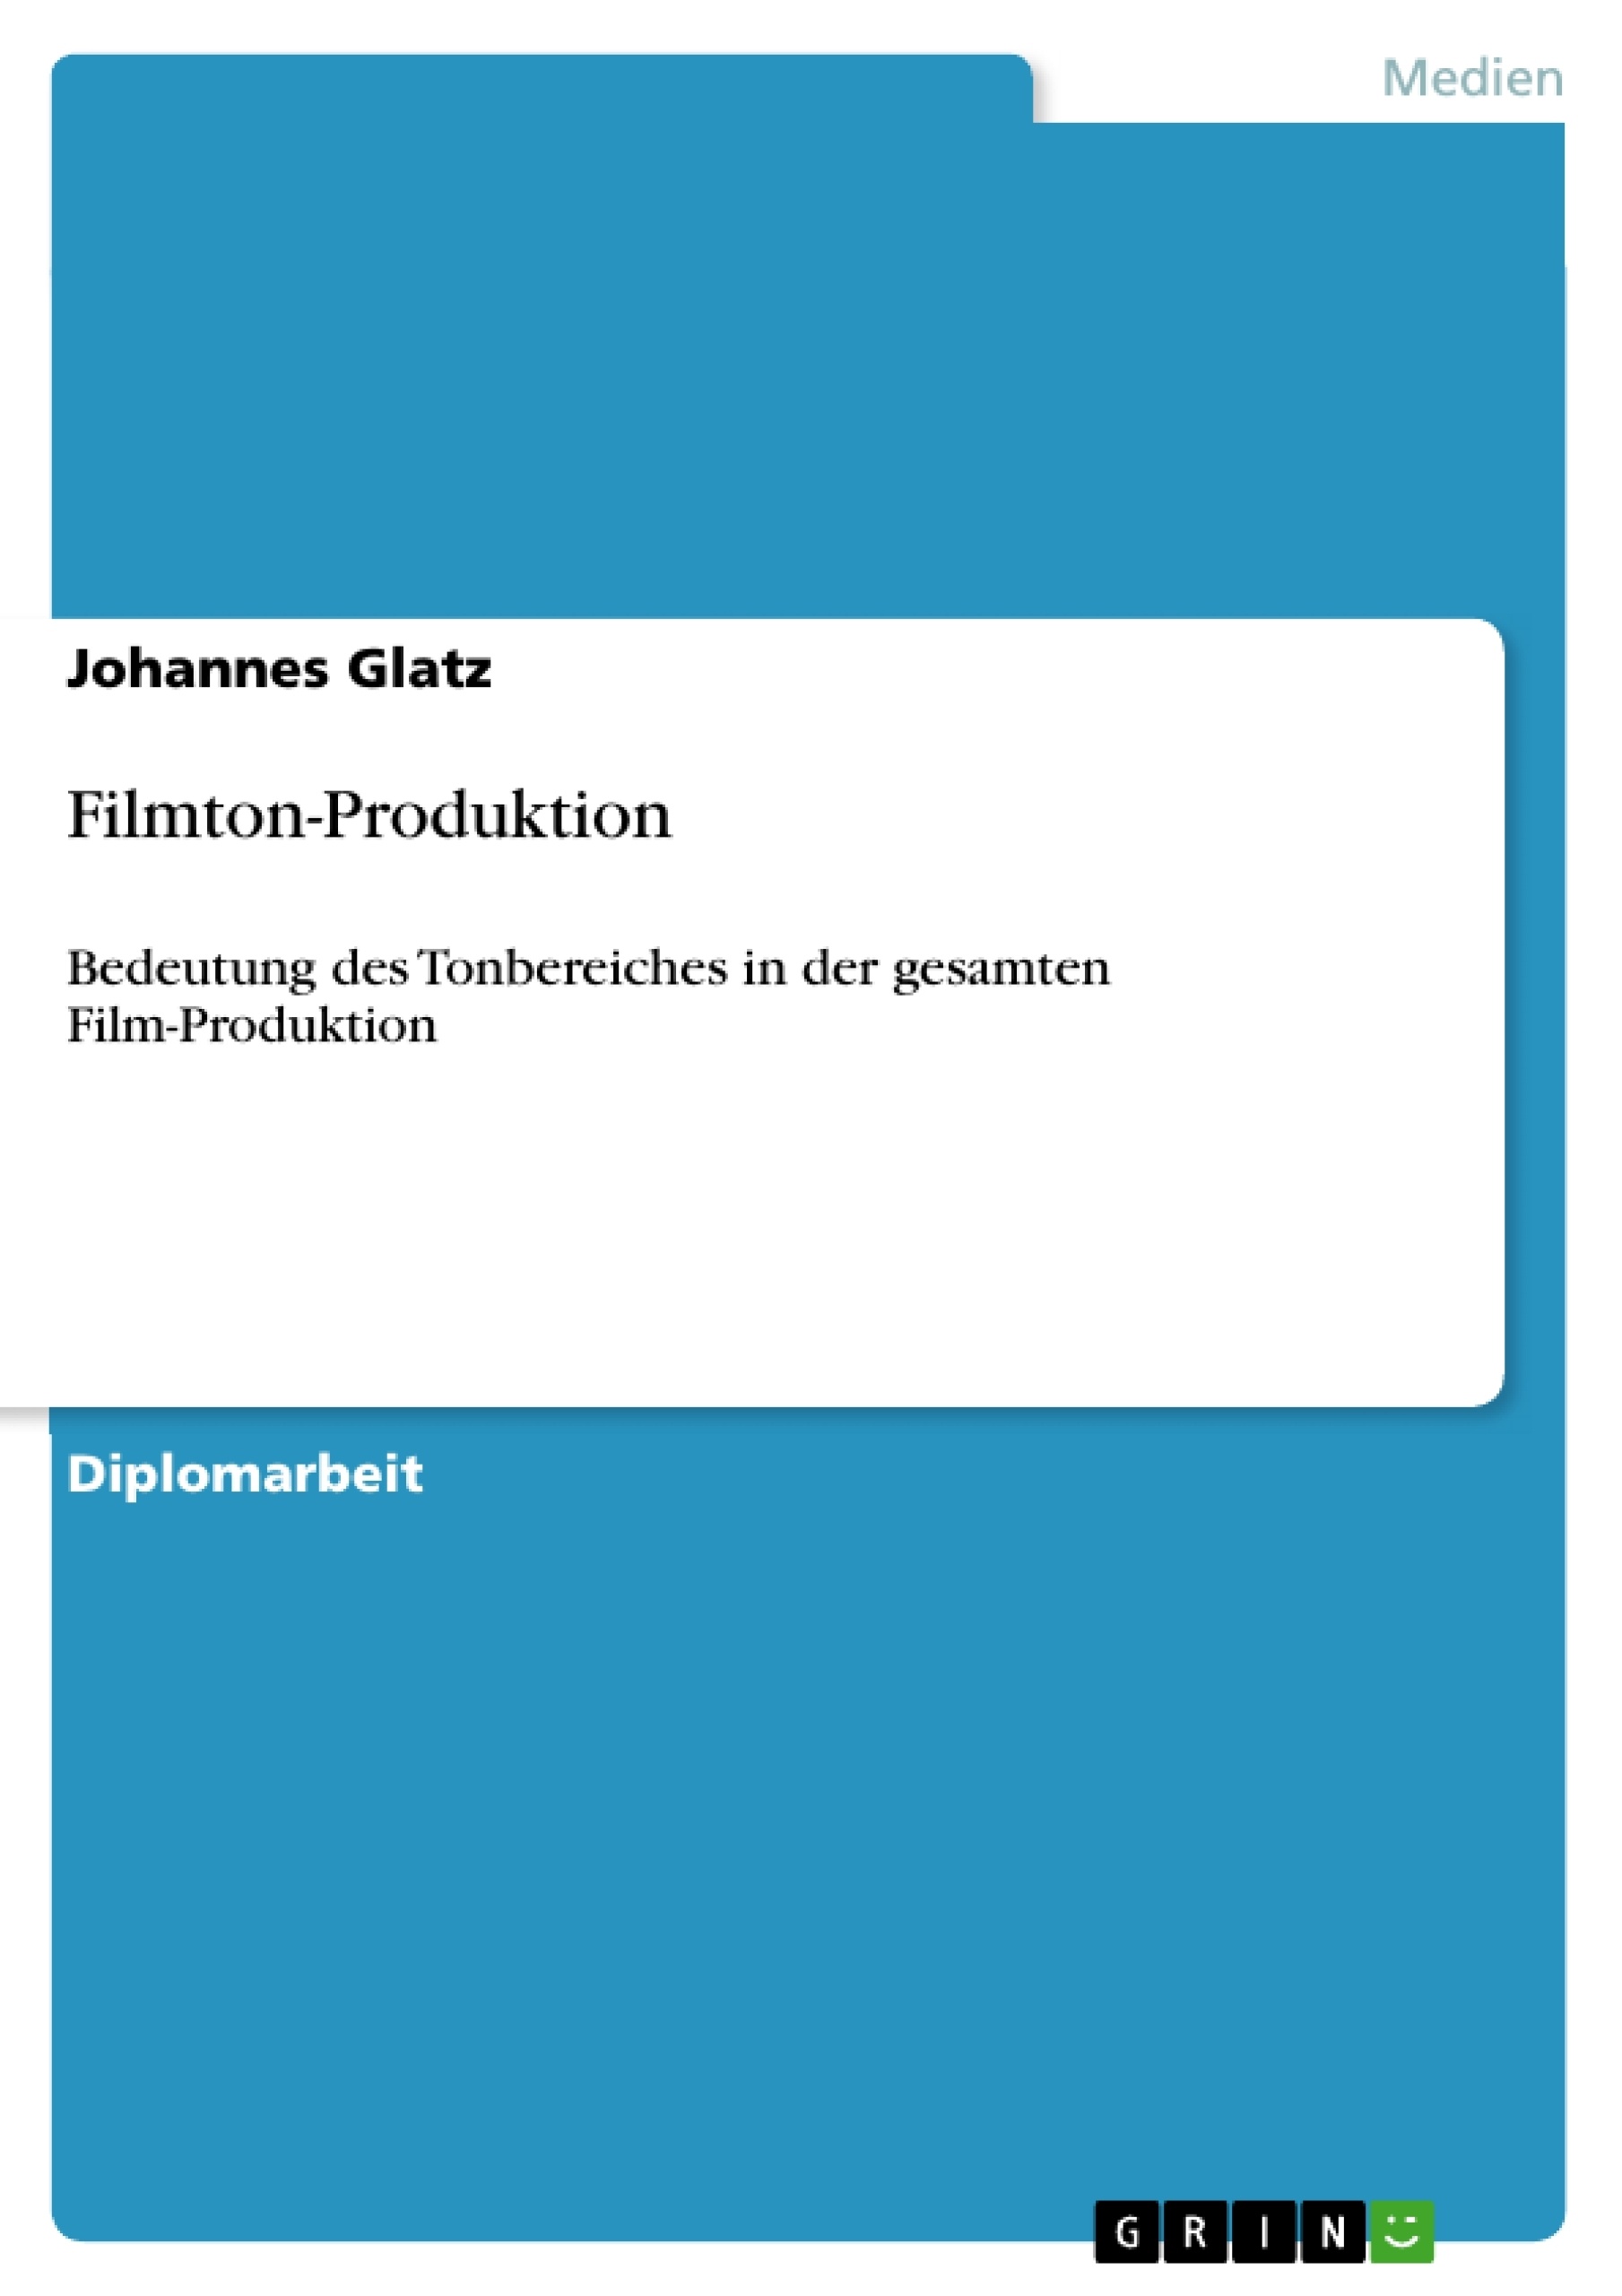 Titre: Filmton-Produktion